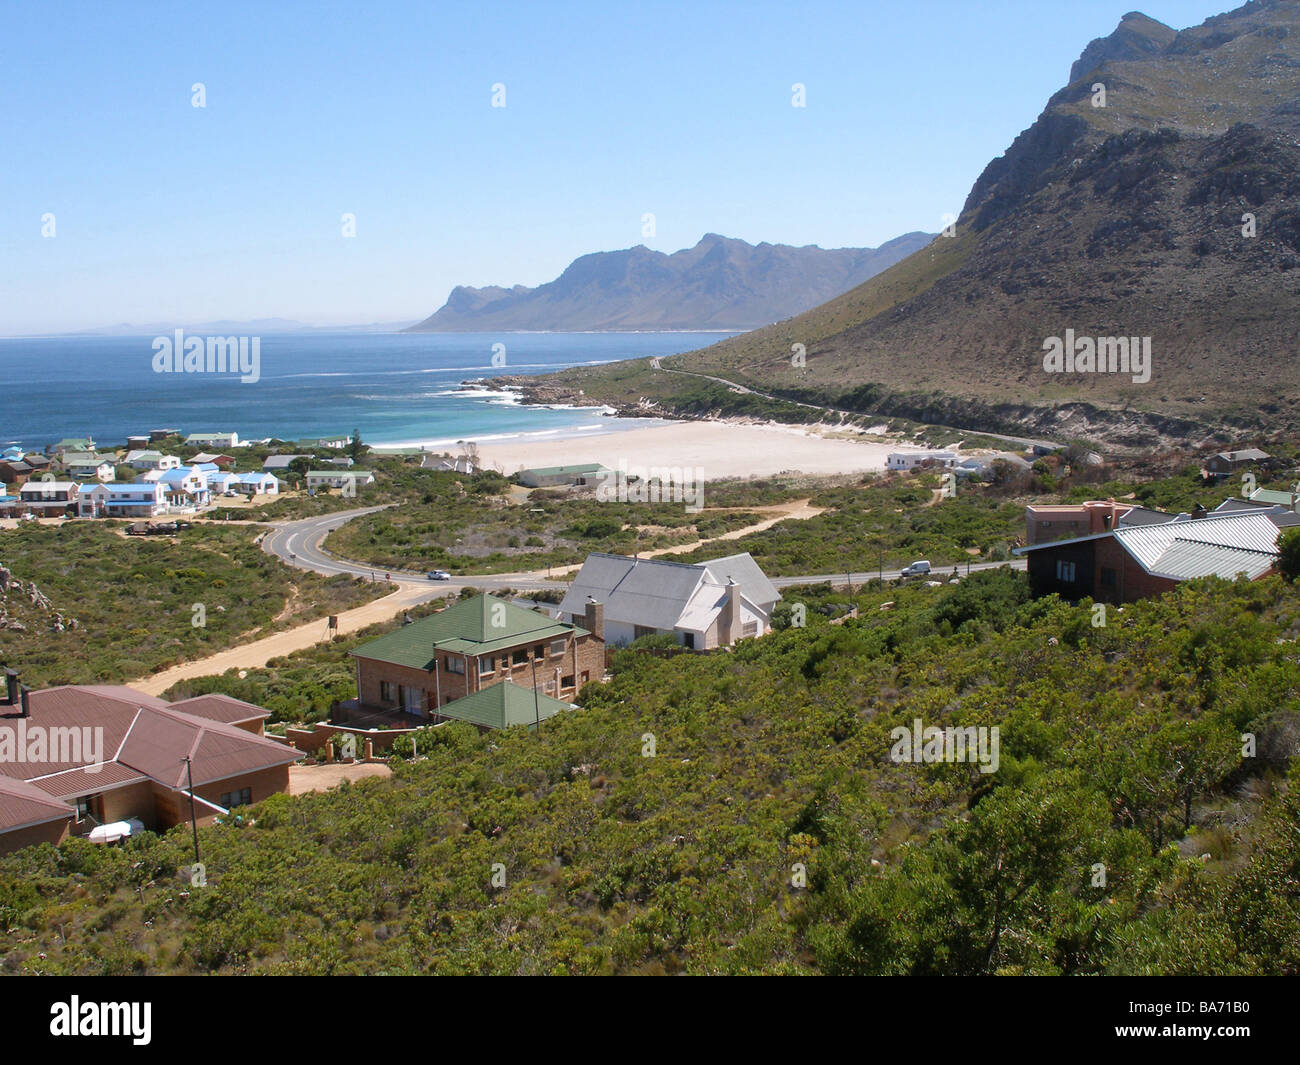 Südafrika Provinz Westkap Küste von Rooi El Platz-Übersicht Berge Meer Afrika Western Cape Landschaft Küste-Landschaft Stockfoto